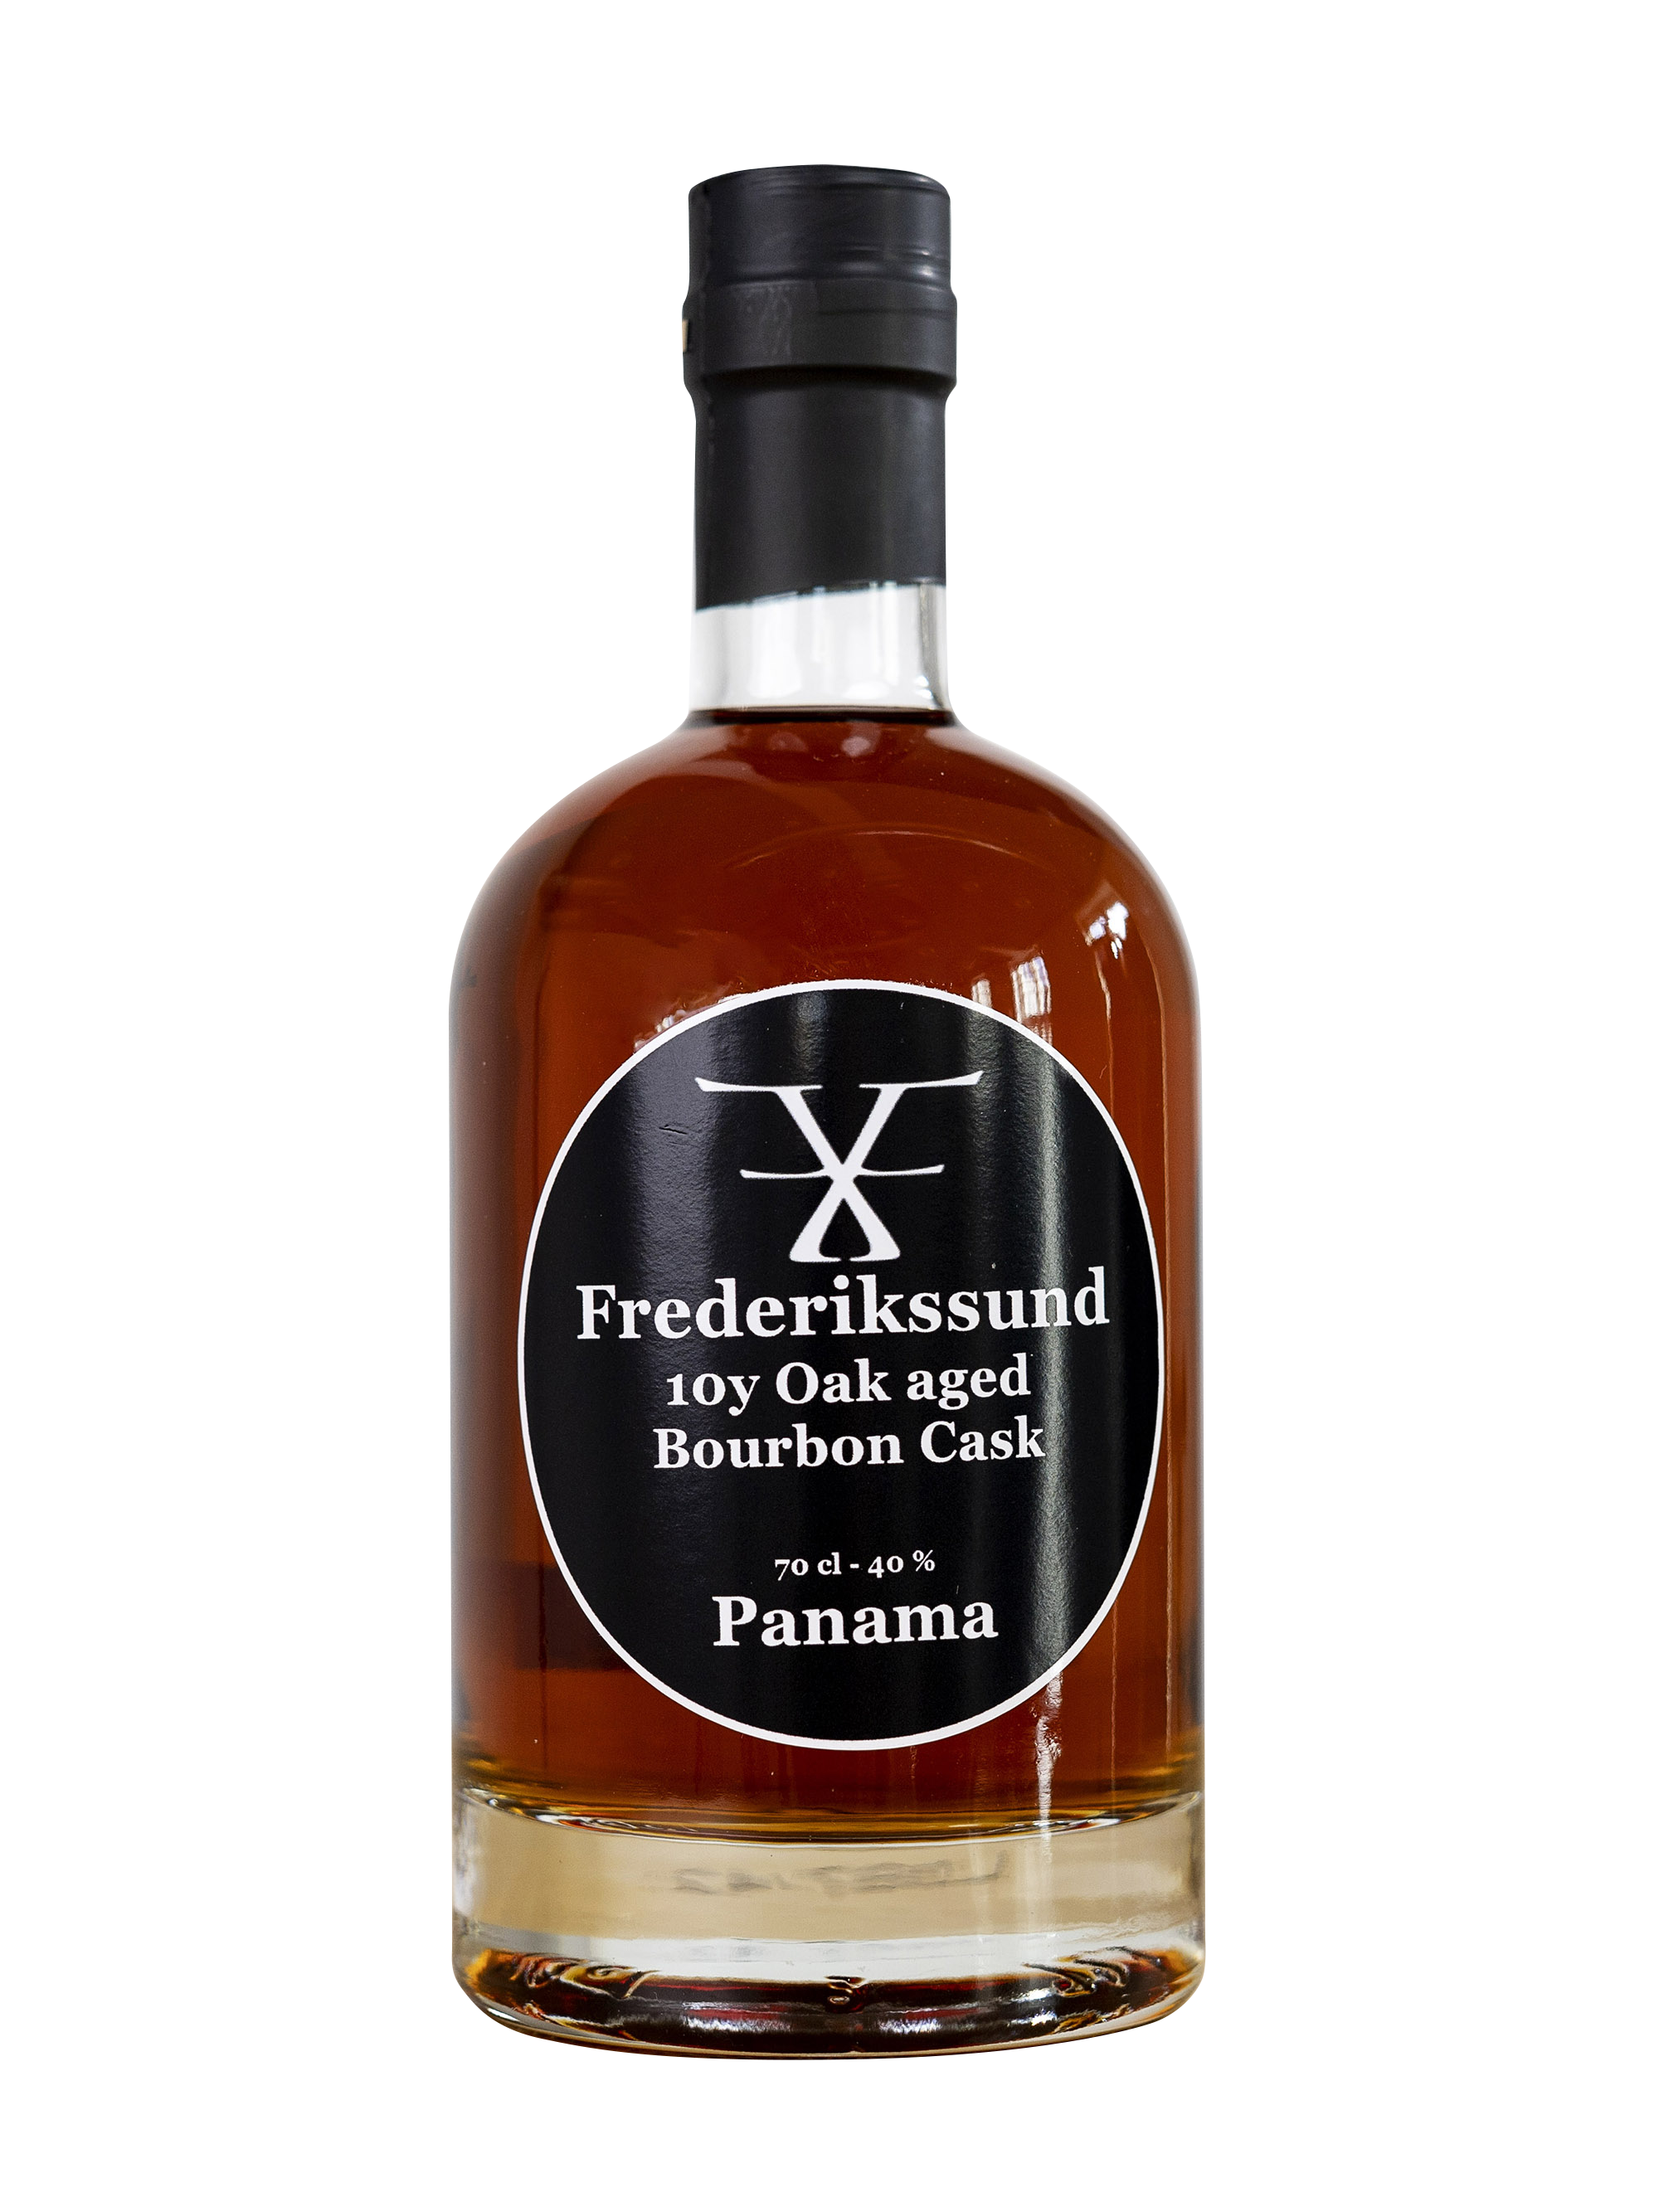 Billede af Bourbon - Frederikssund 10 y. aged Bourbon Cask Panama, 70 cl. 40%